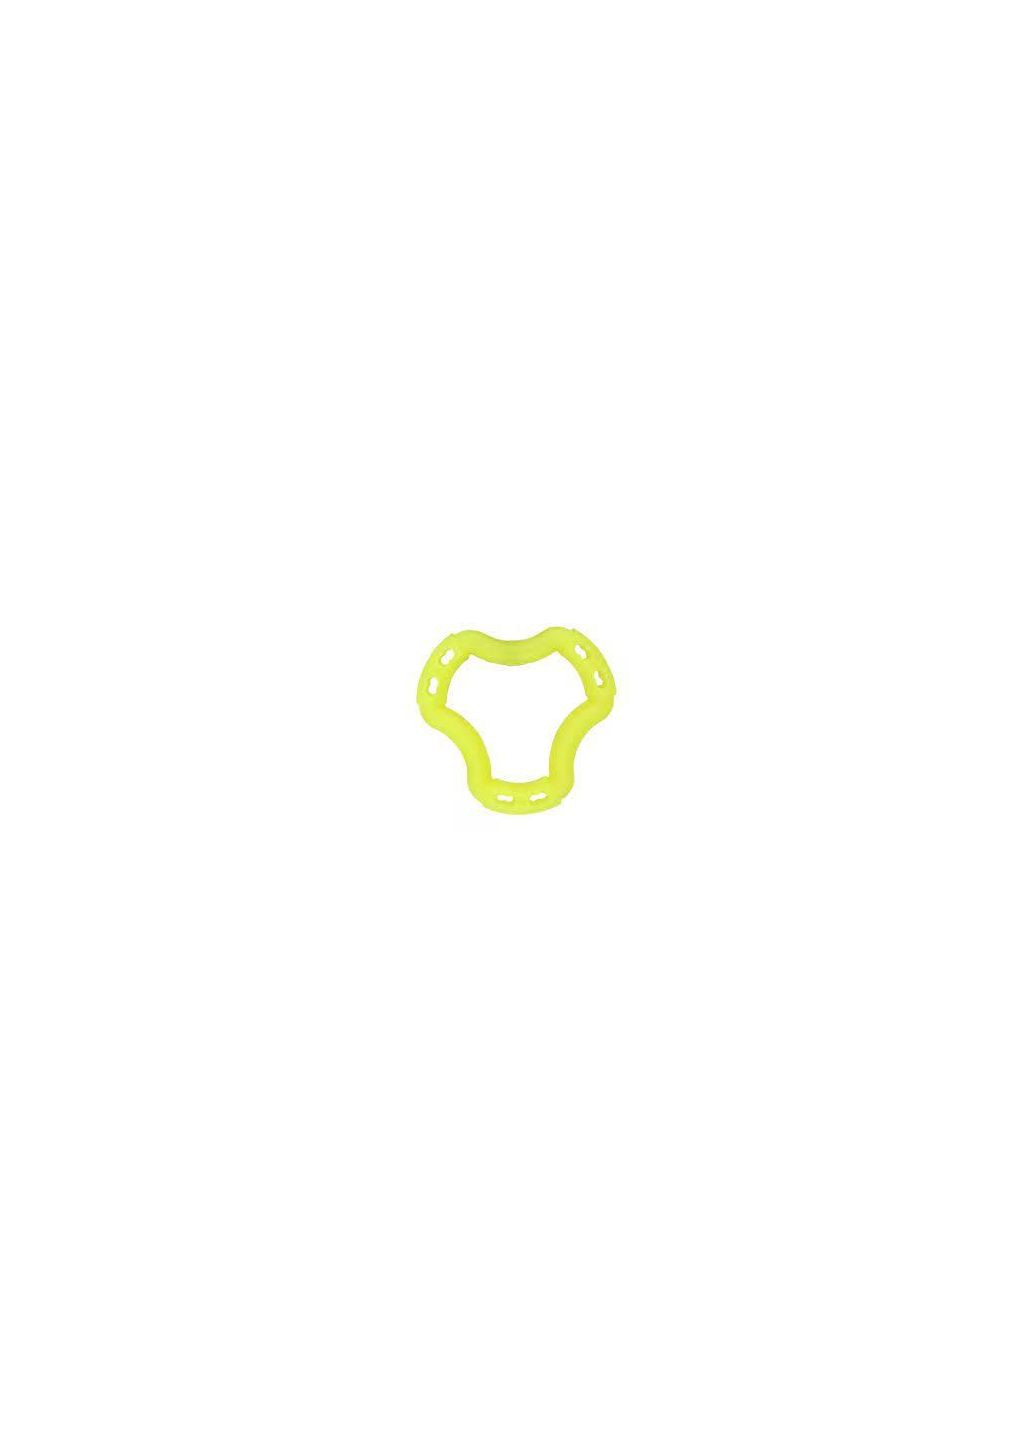 Игрушка Fun кольцо 6 сторон, жёлтый, 12 см AnimAll (278309172)